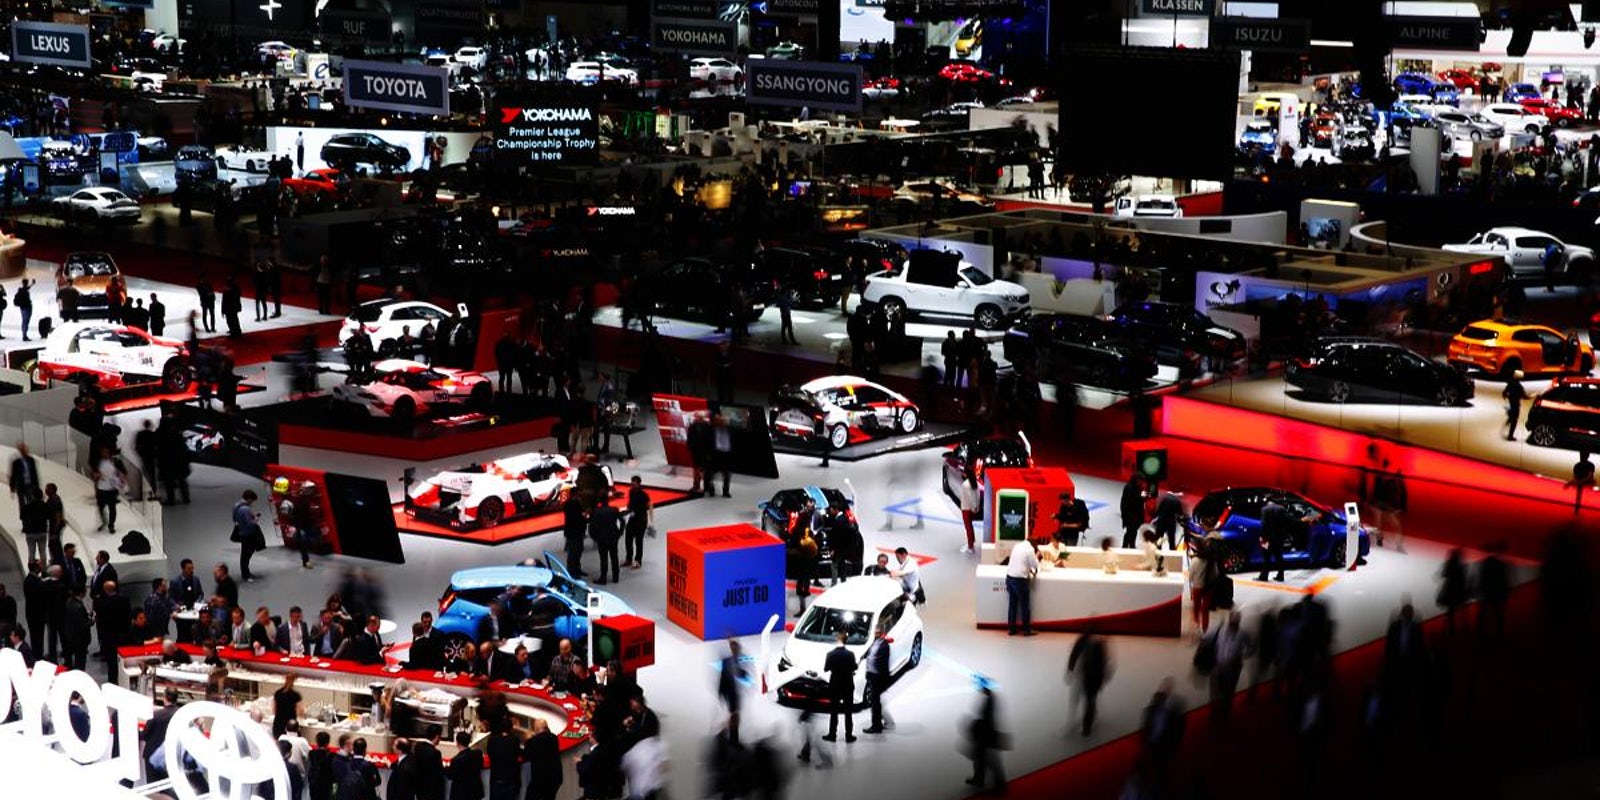 Triển lãm Geneva Motor Show 2019 quy tụ nhiều nhà sản xuất ô tô danh tiếng